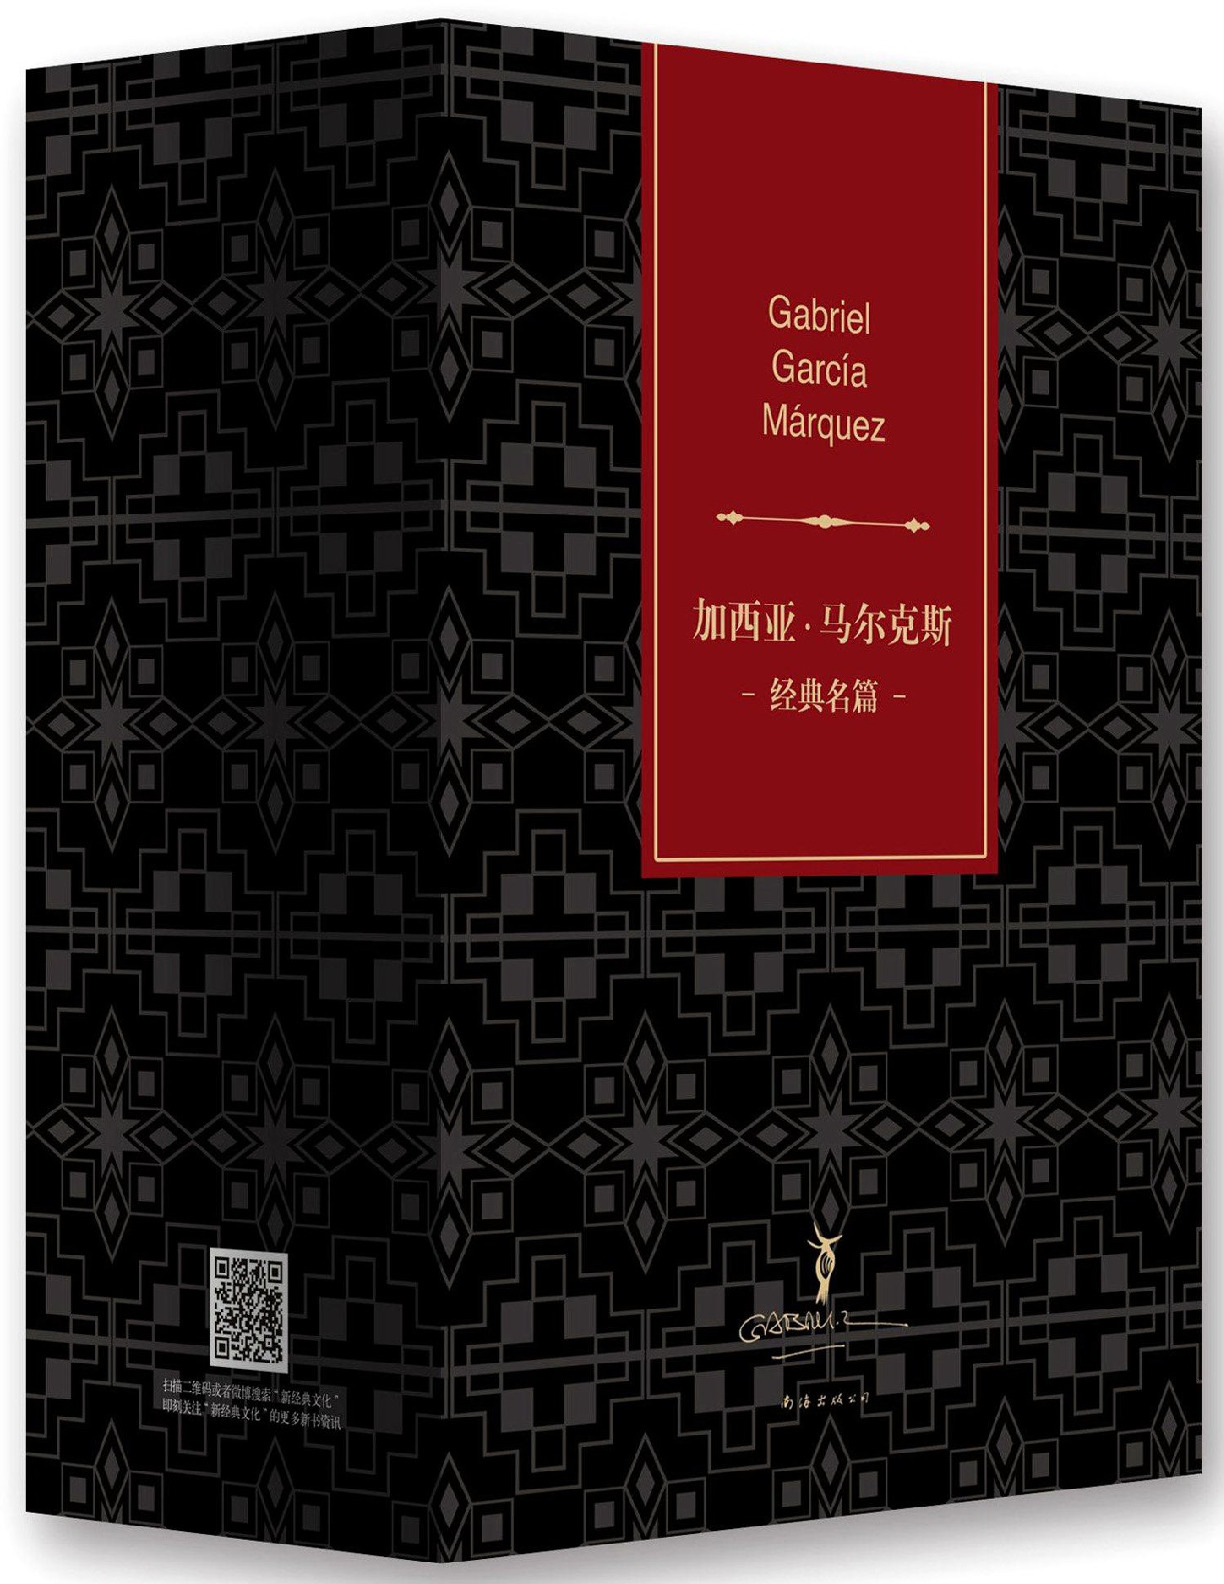 加西亚•马尔克斯经典名篇(套装共5册) – 加西亚·马尔克斯 & 加西亚马尔克斯